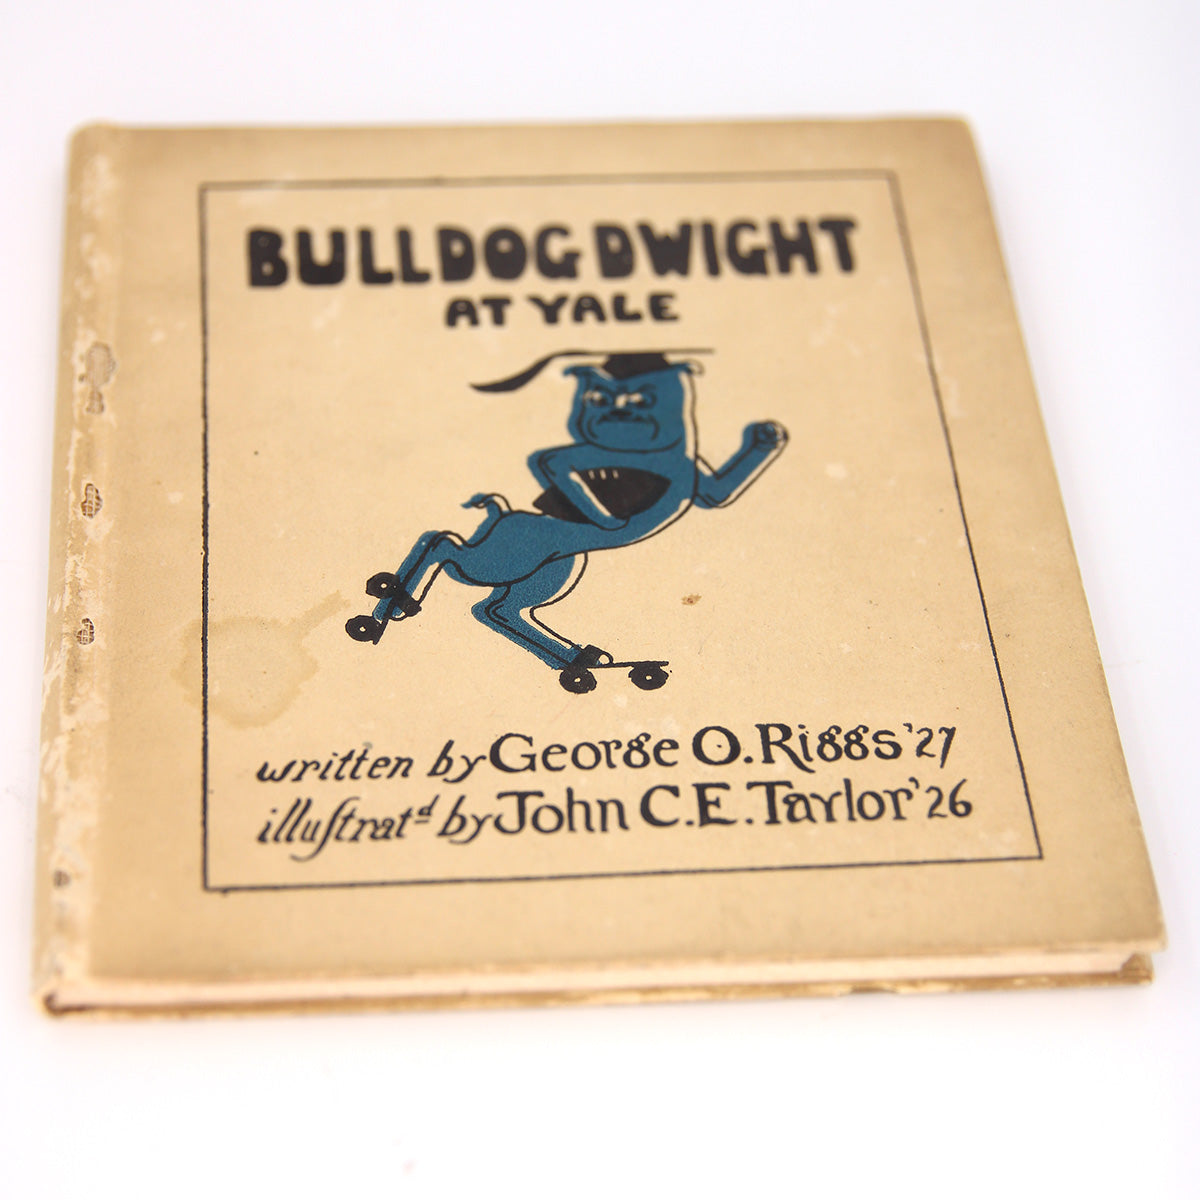 Bulldog Dwight at Yale, c.1924